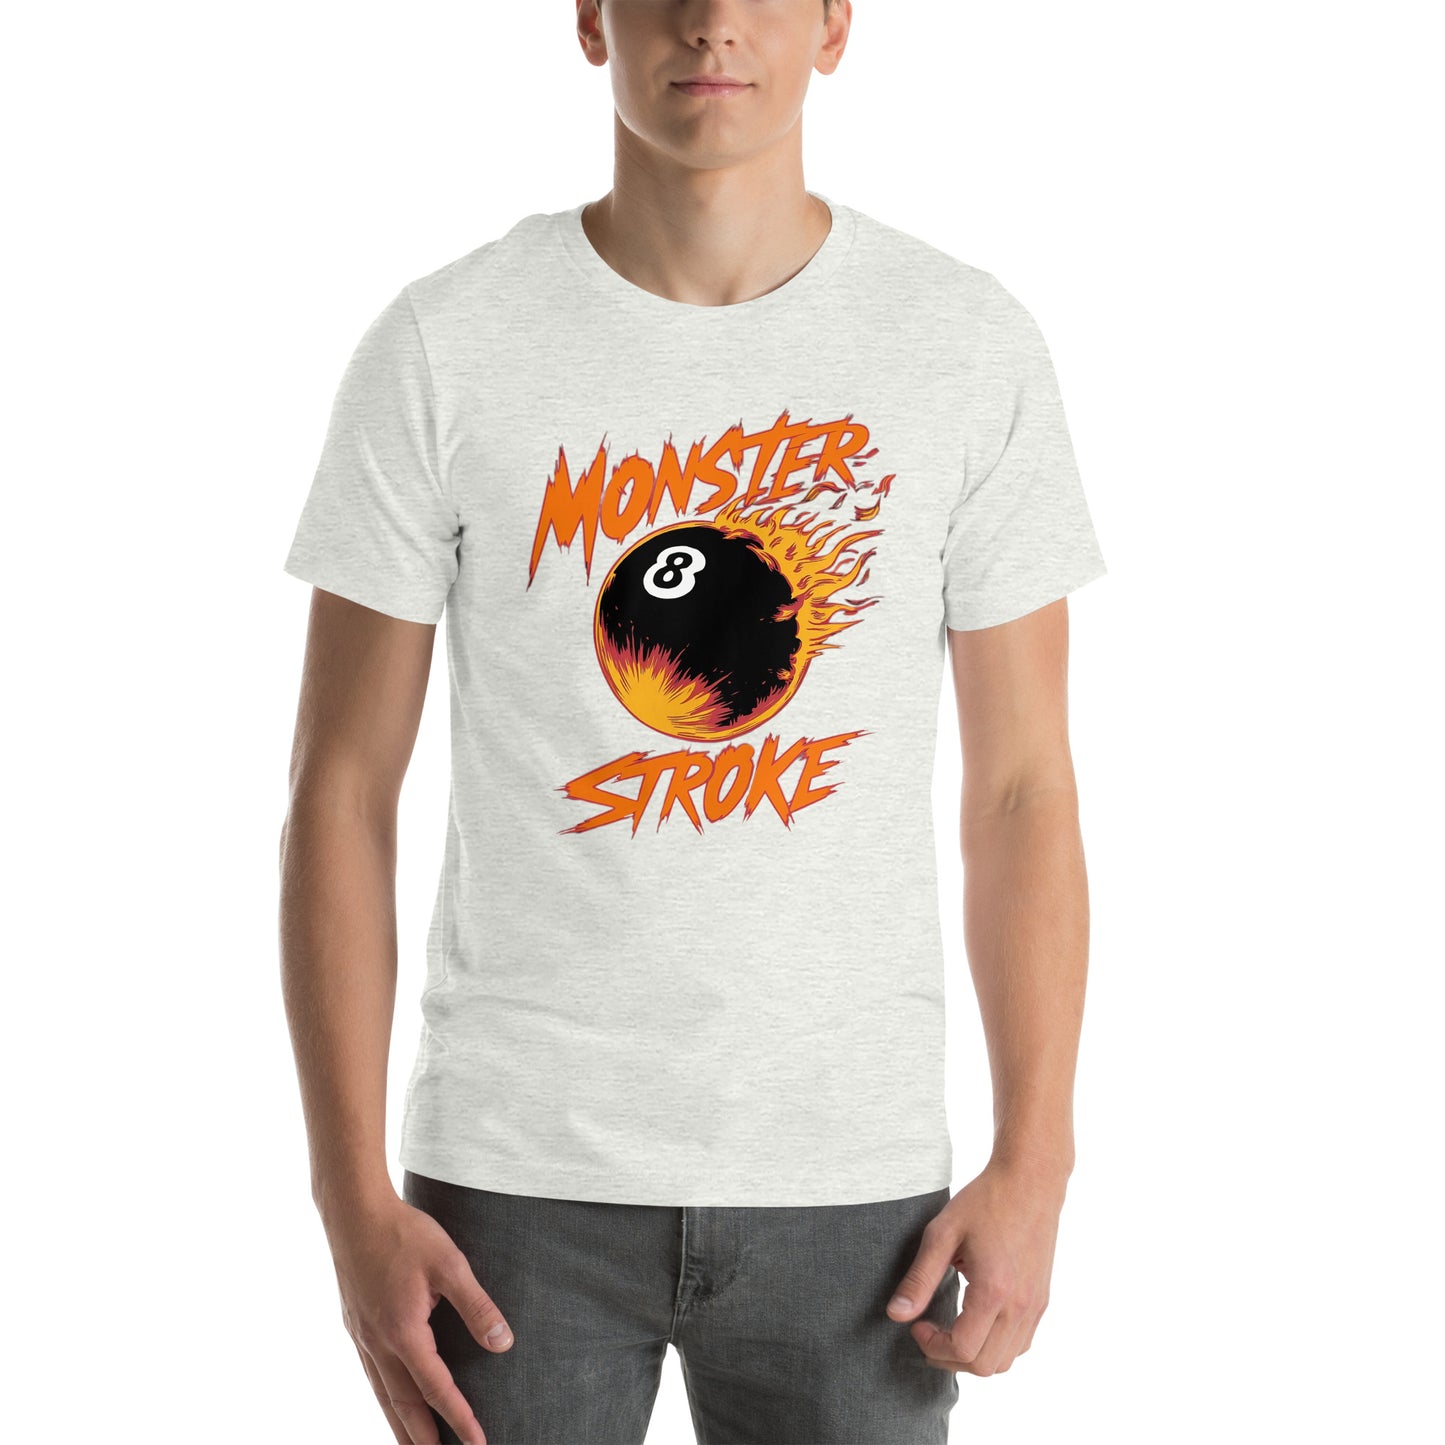 Monster Stroke 8-ball Asteroid Unisex t-shirt